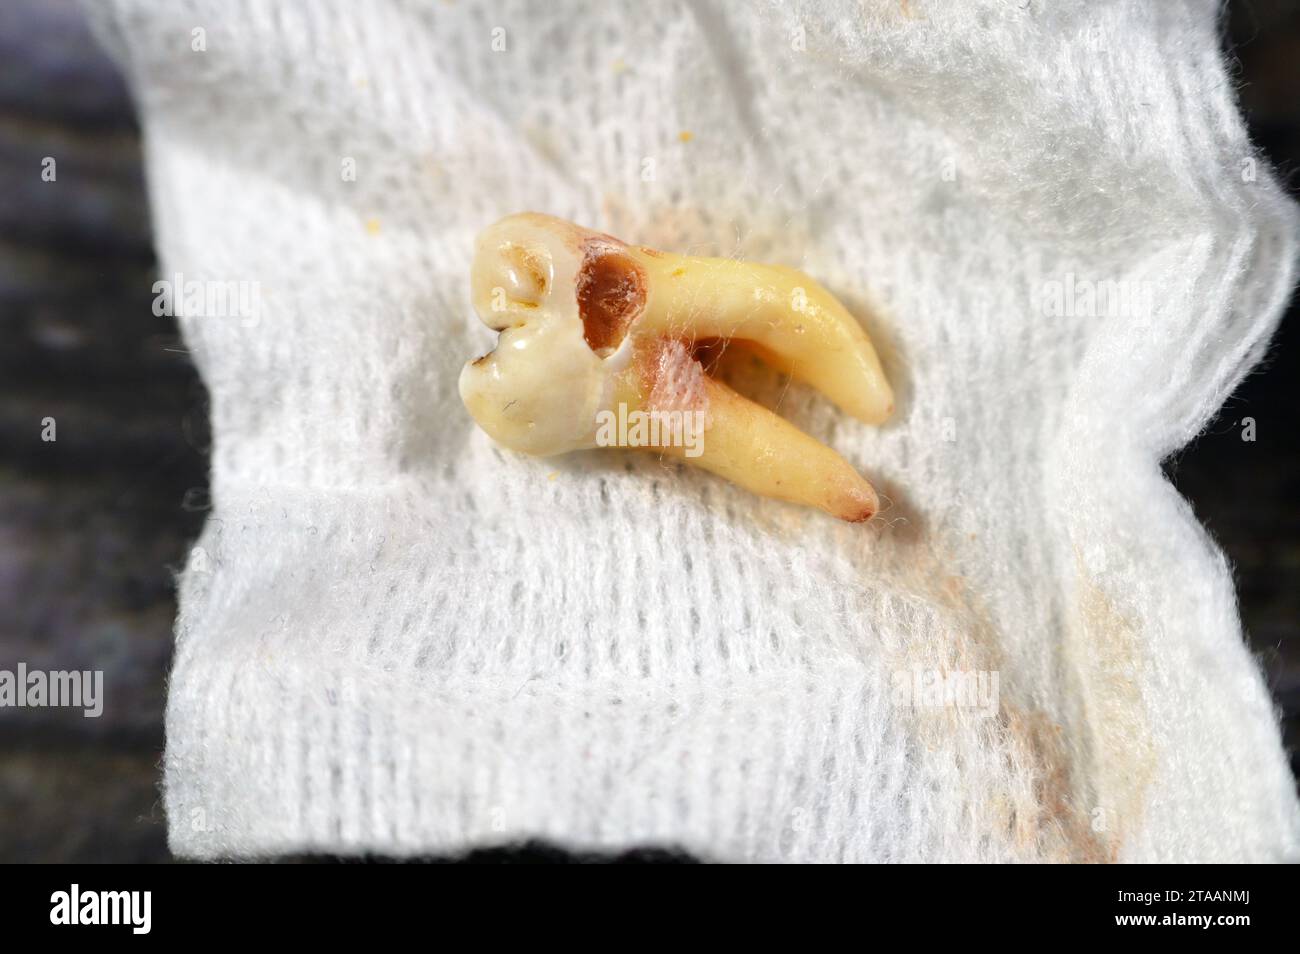 Sagesse extraite 8e dent inférieure droite avec une carie dentaire, après avoir exposé le nerf et la douleur intense, l'enflure et l'inflammation, les dents de sagesse sont les molaires Banque D'Images